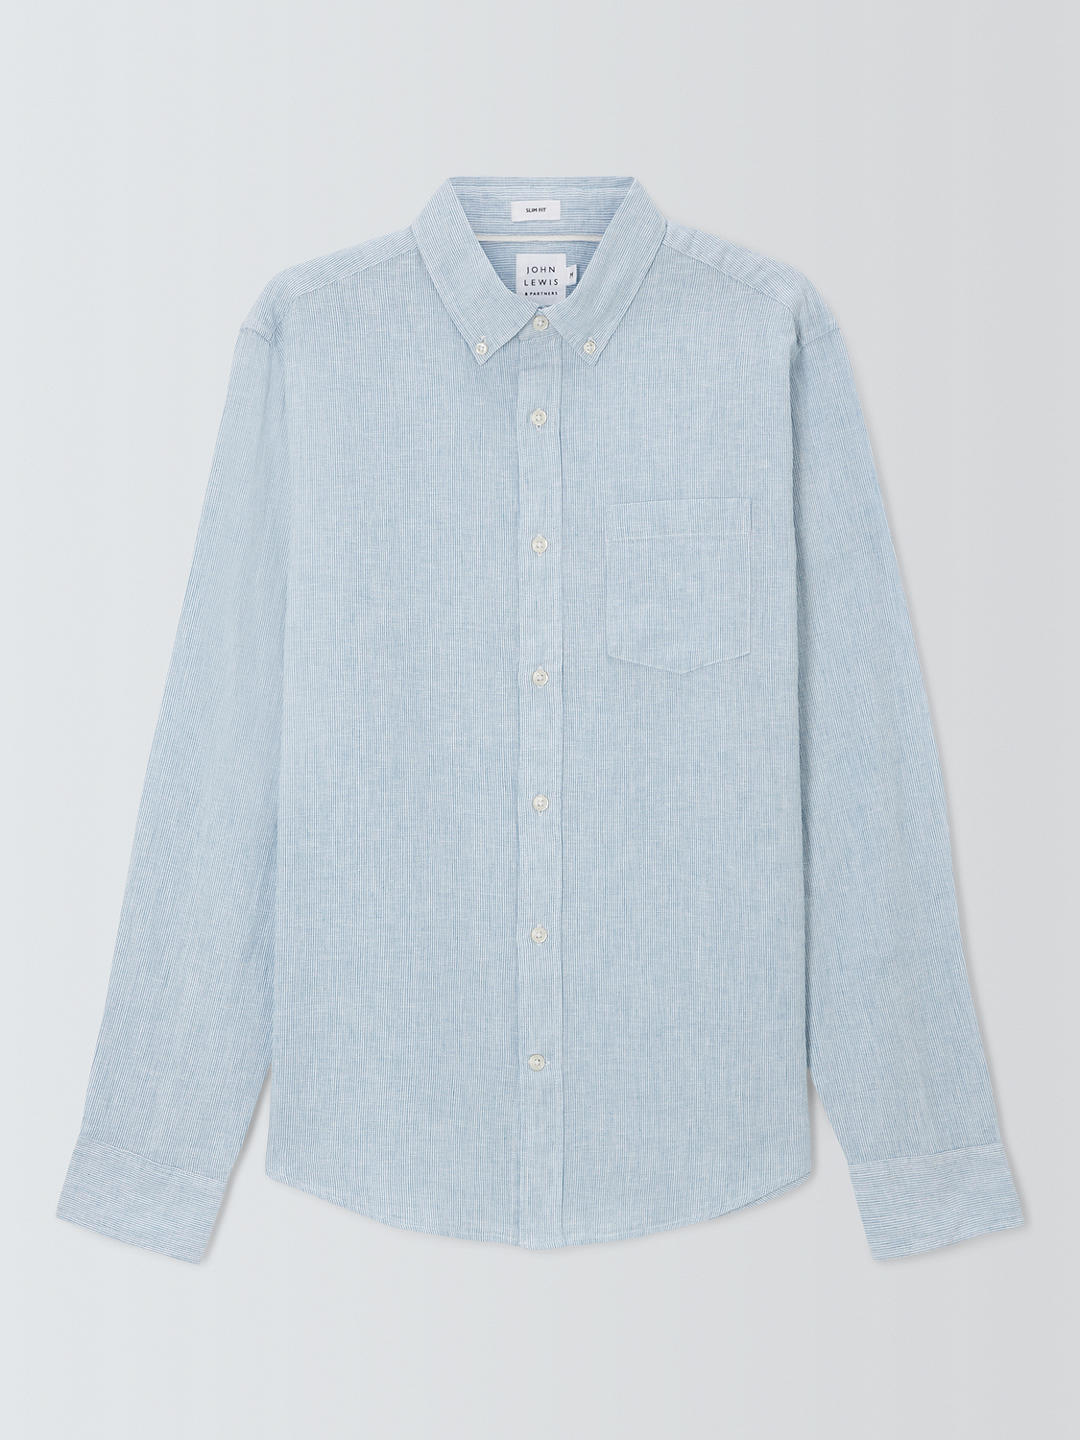 John Lewis Linen Blend Micro Stripe Long Sleeve Shirt, Blue